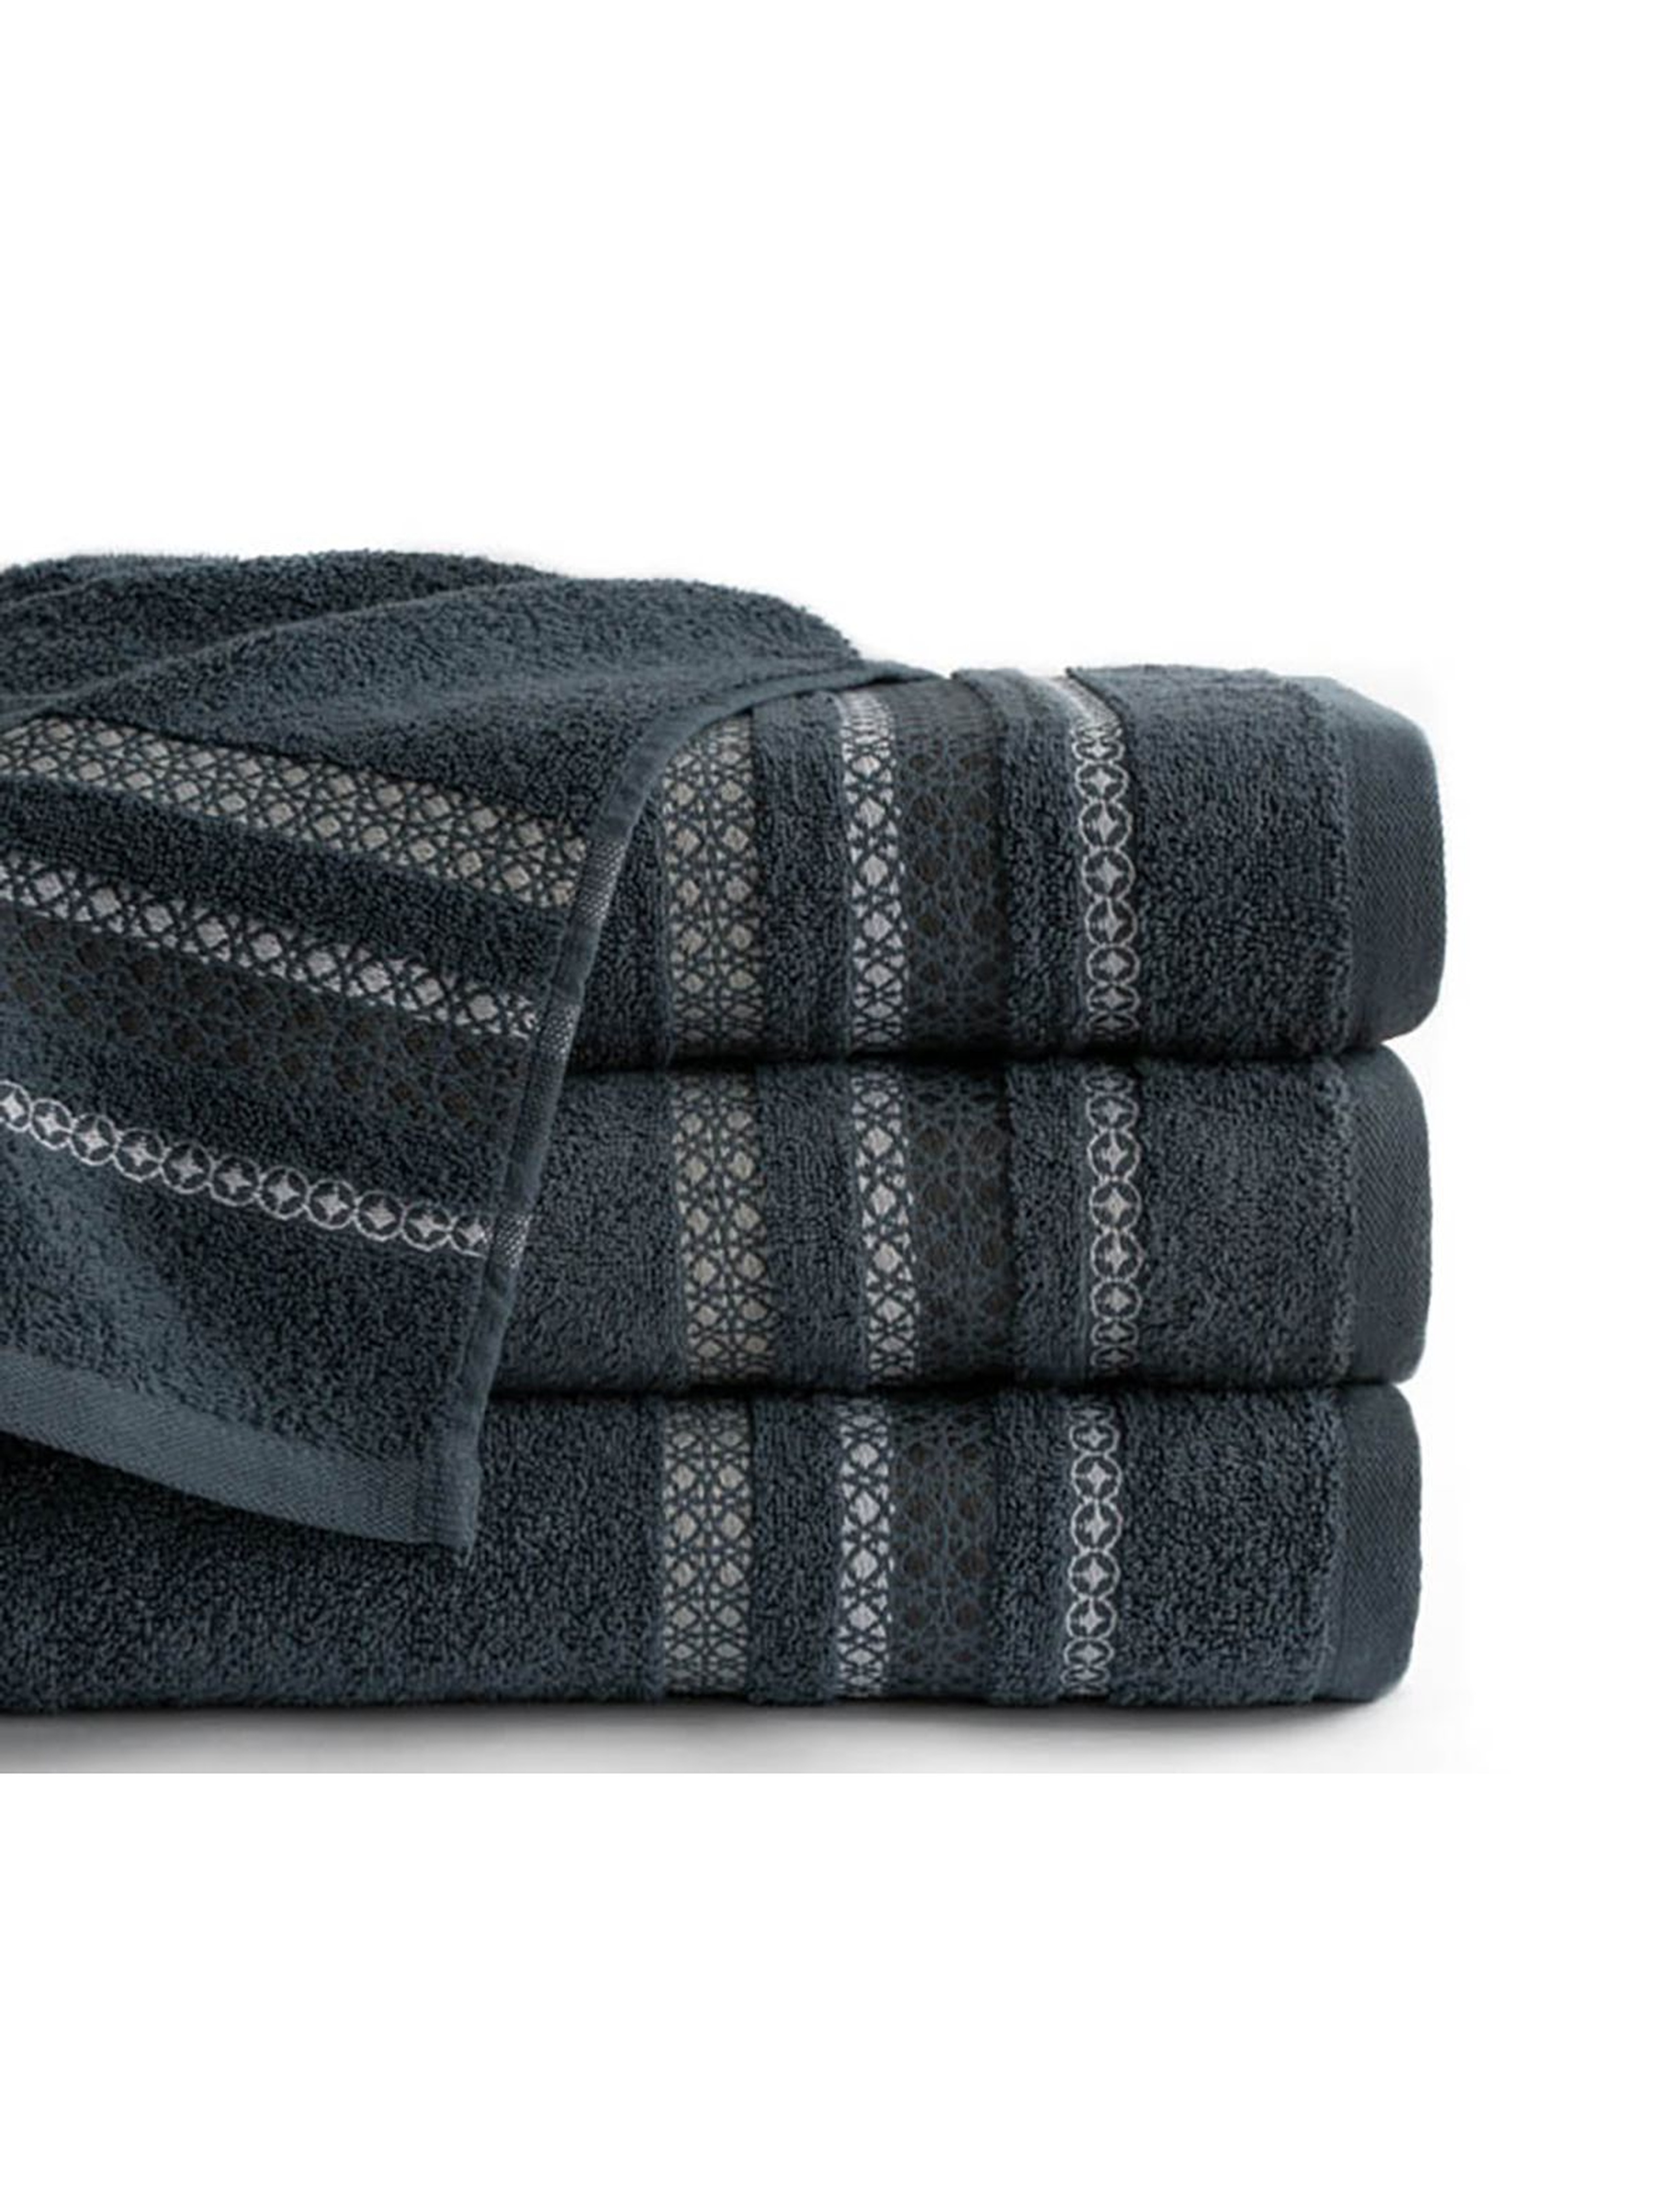 Bawełniany ręcznik CLOE  70x140  cm - szary